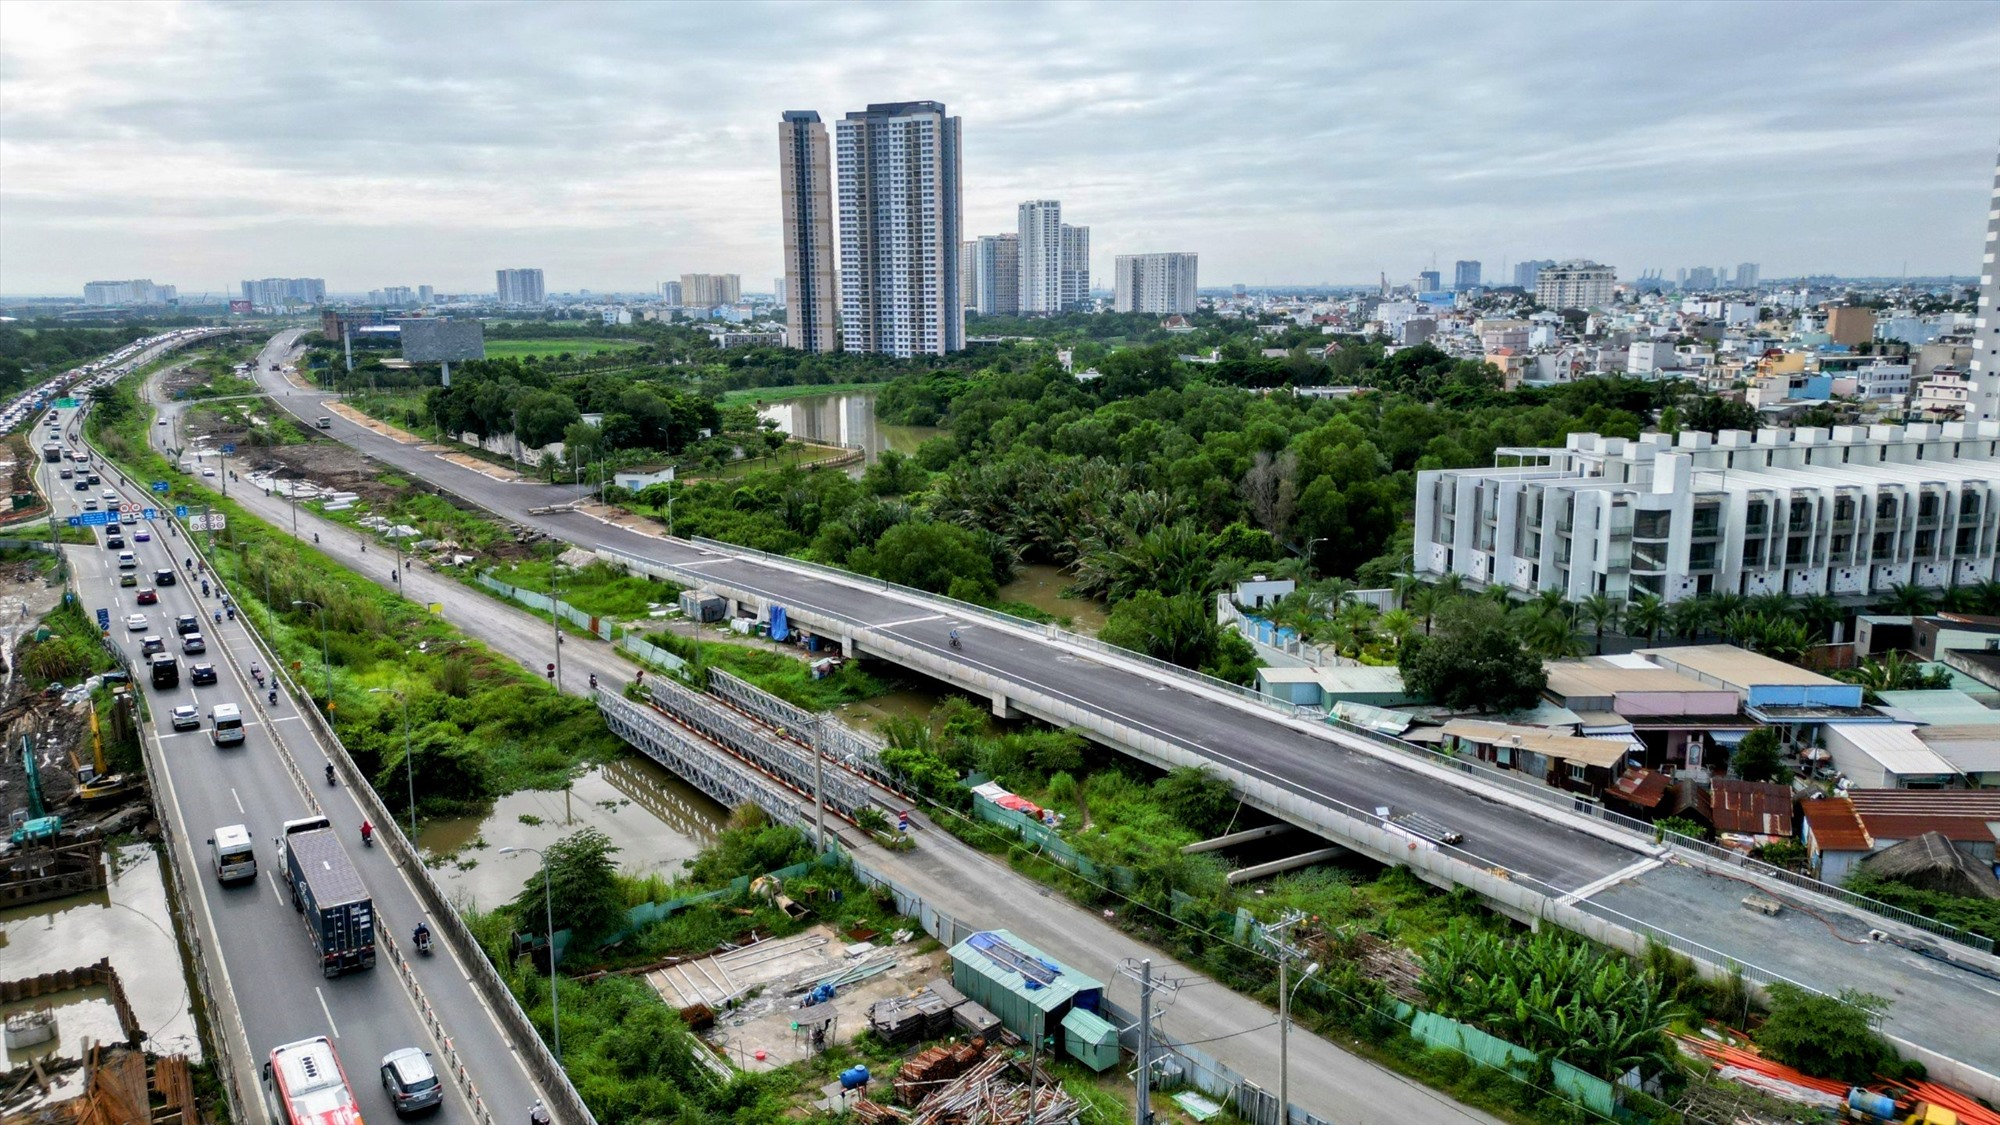 Đường song hành cao tốc TPHCM - Long Thành được khởi công vào tháng 4.2017 theo hợp đồng BT (xây dựng - chuyển giao) với tổng mức đầu tư 869 tỉ đồng, dự kiến hoàn thành sau hai năm. Nhưng do vướng mặt bằng và thủ tục thanh toán theo hợp đồng BT nên chậm tiến độ.